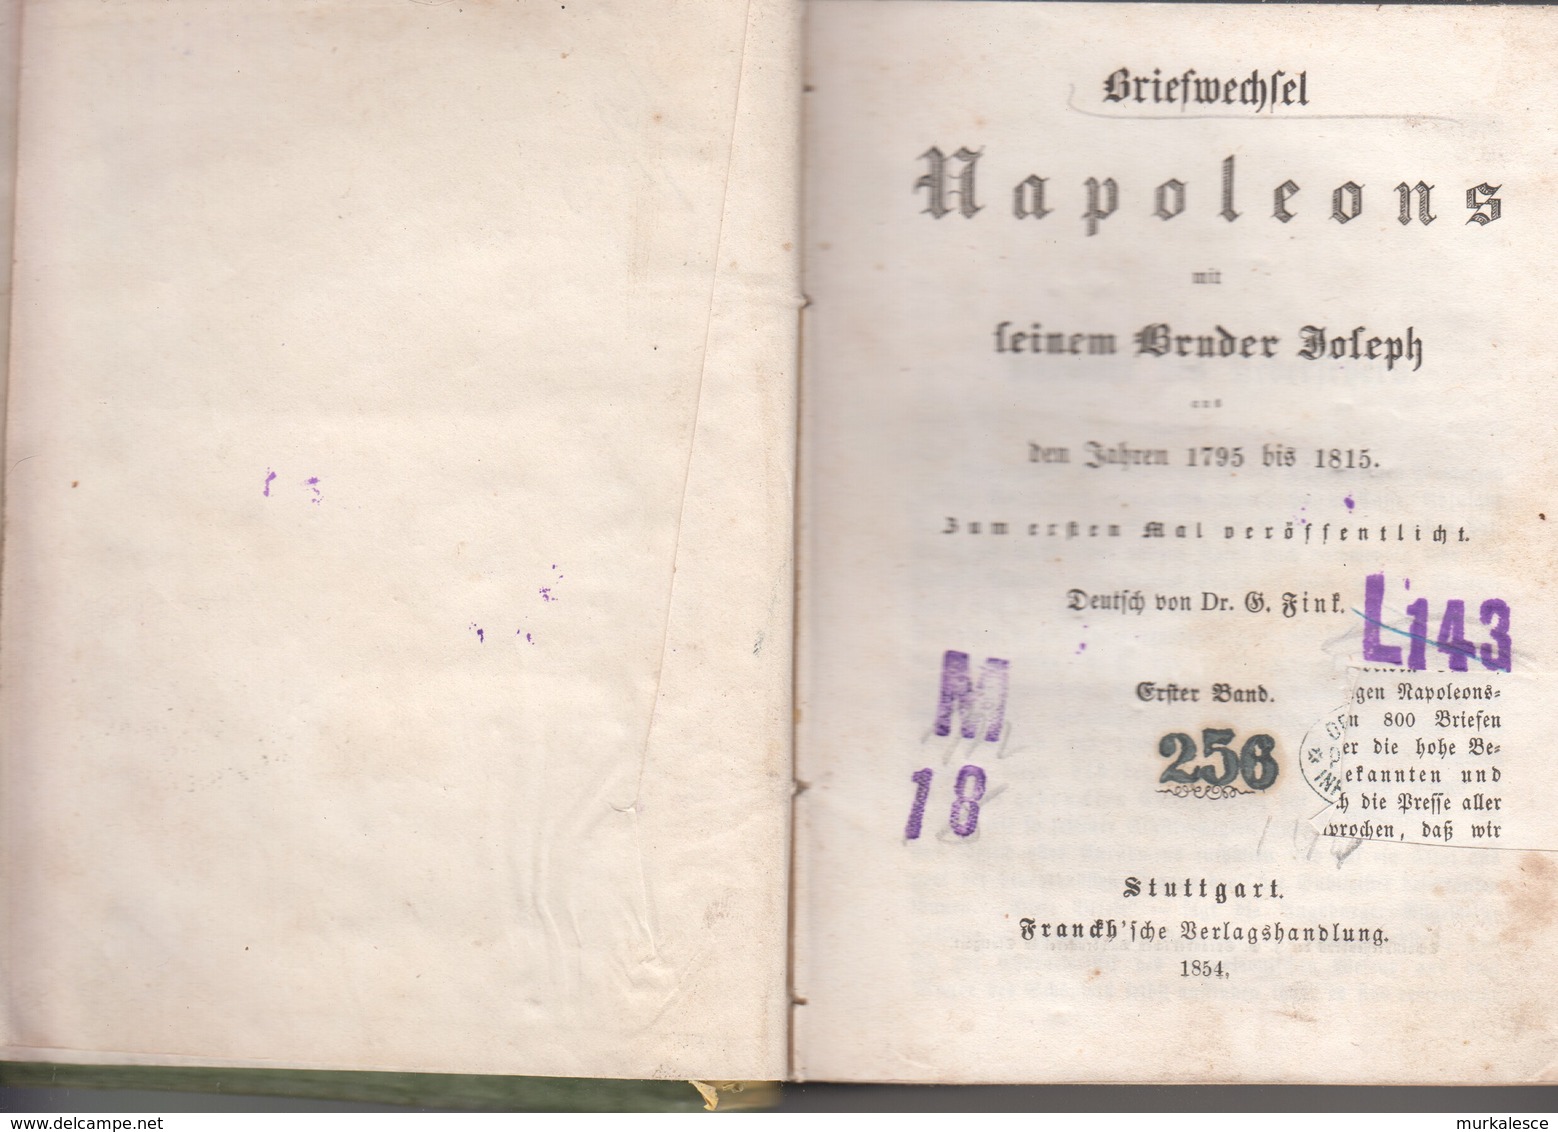 ALTE BUCHER    NAPOLEONS   STUTTGART    1854   SEITEN  478 - Alte Bücher